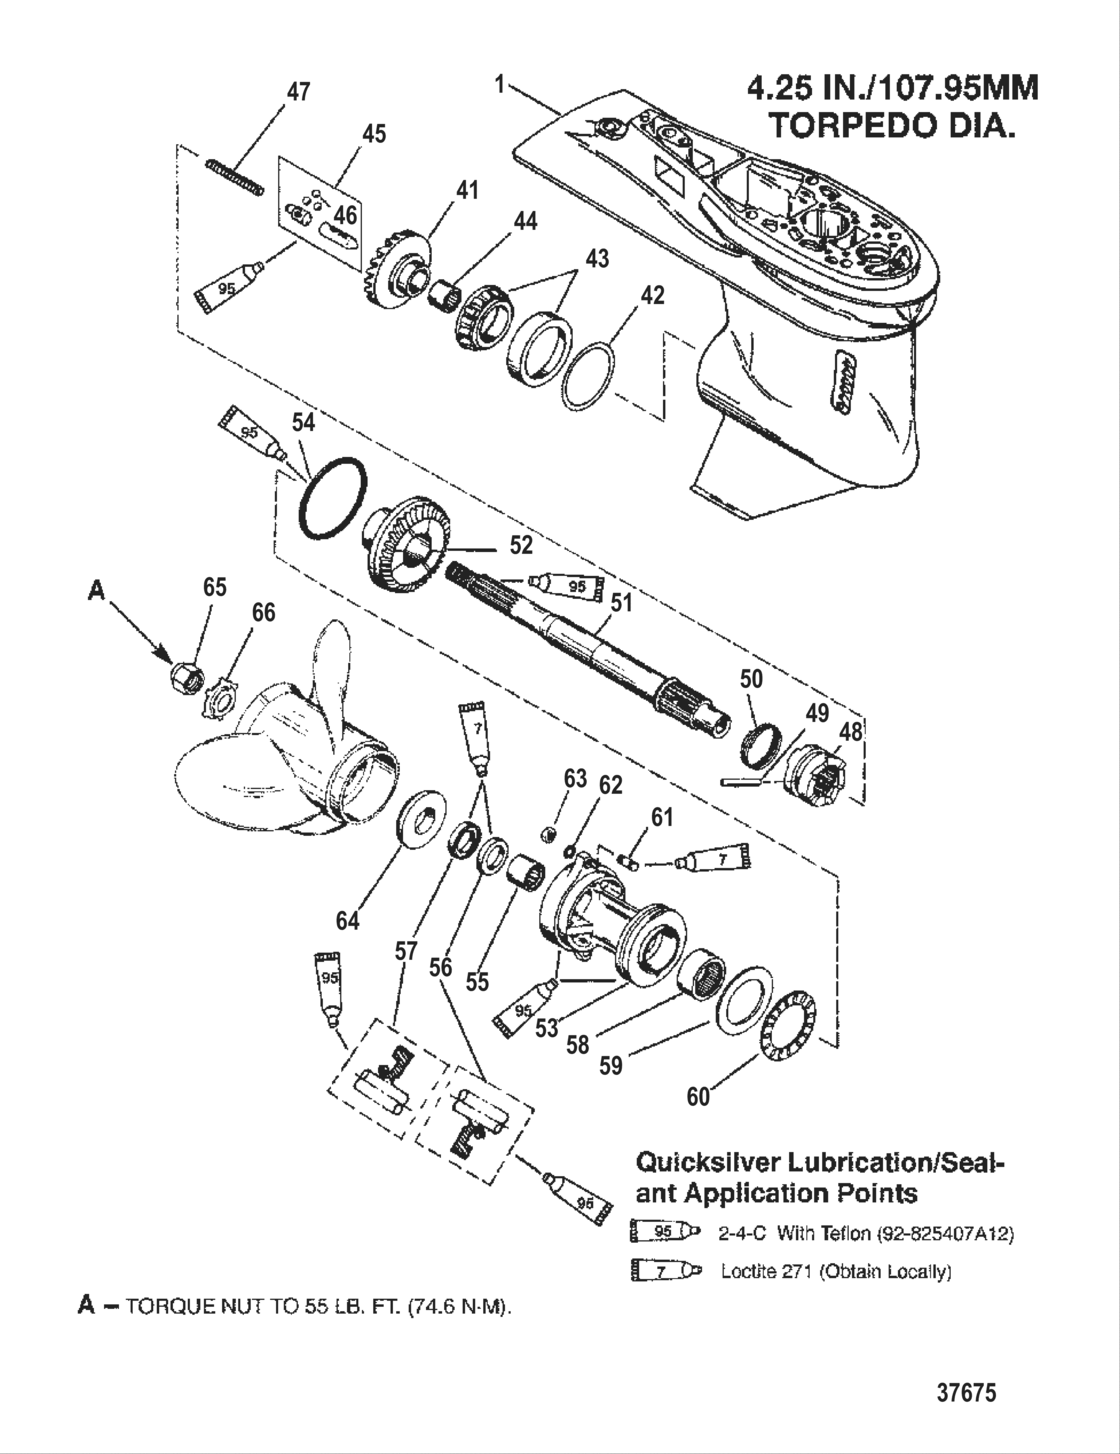 Gear Housing (Propeller Shaft)(2.31:1 Gear Ratio)